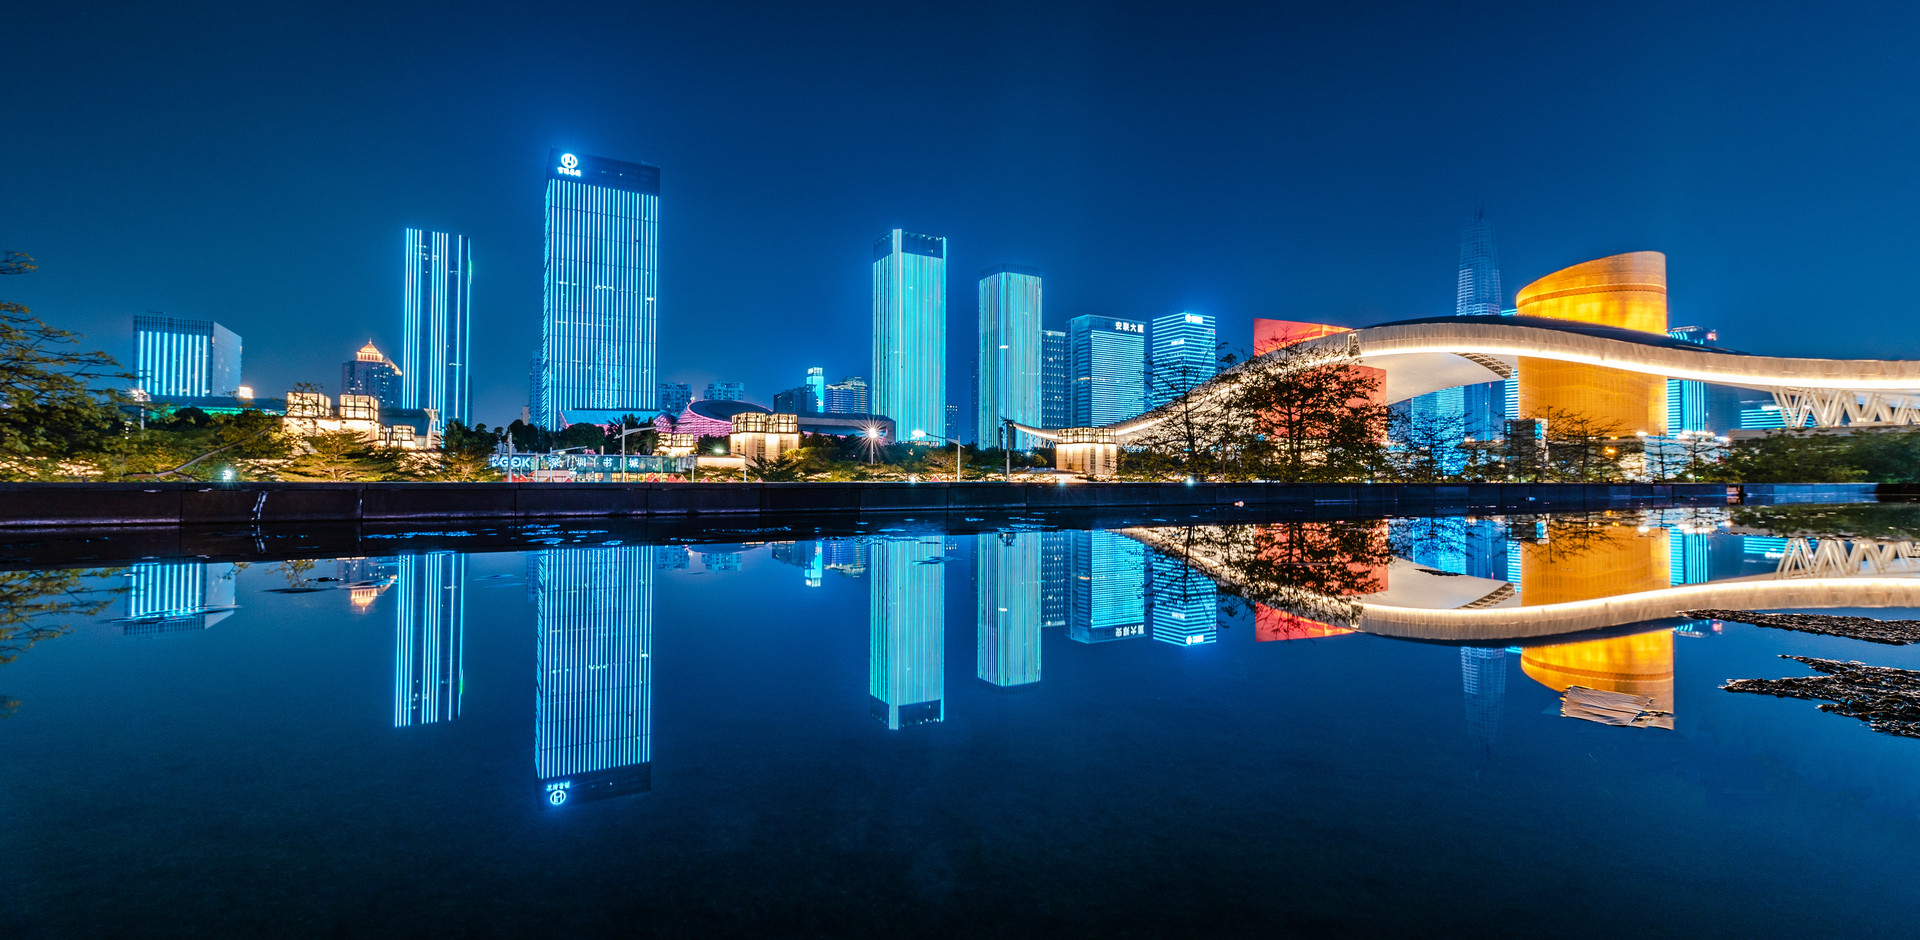 深圳市民中心灯光秀最佳观看地点